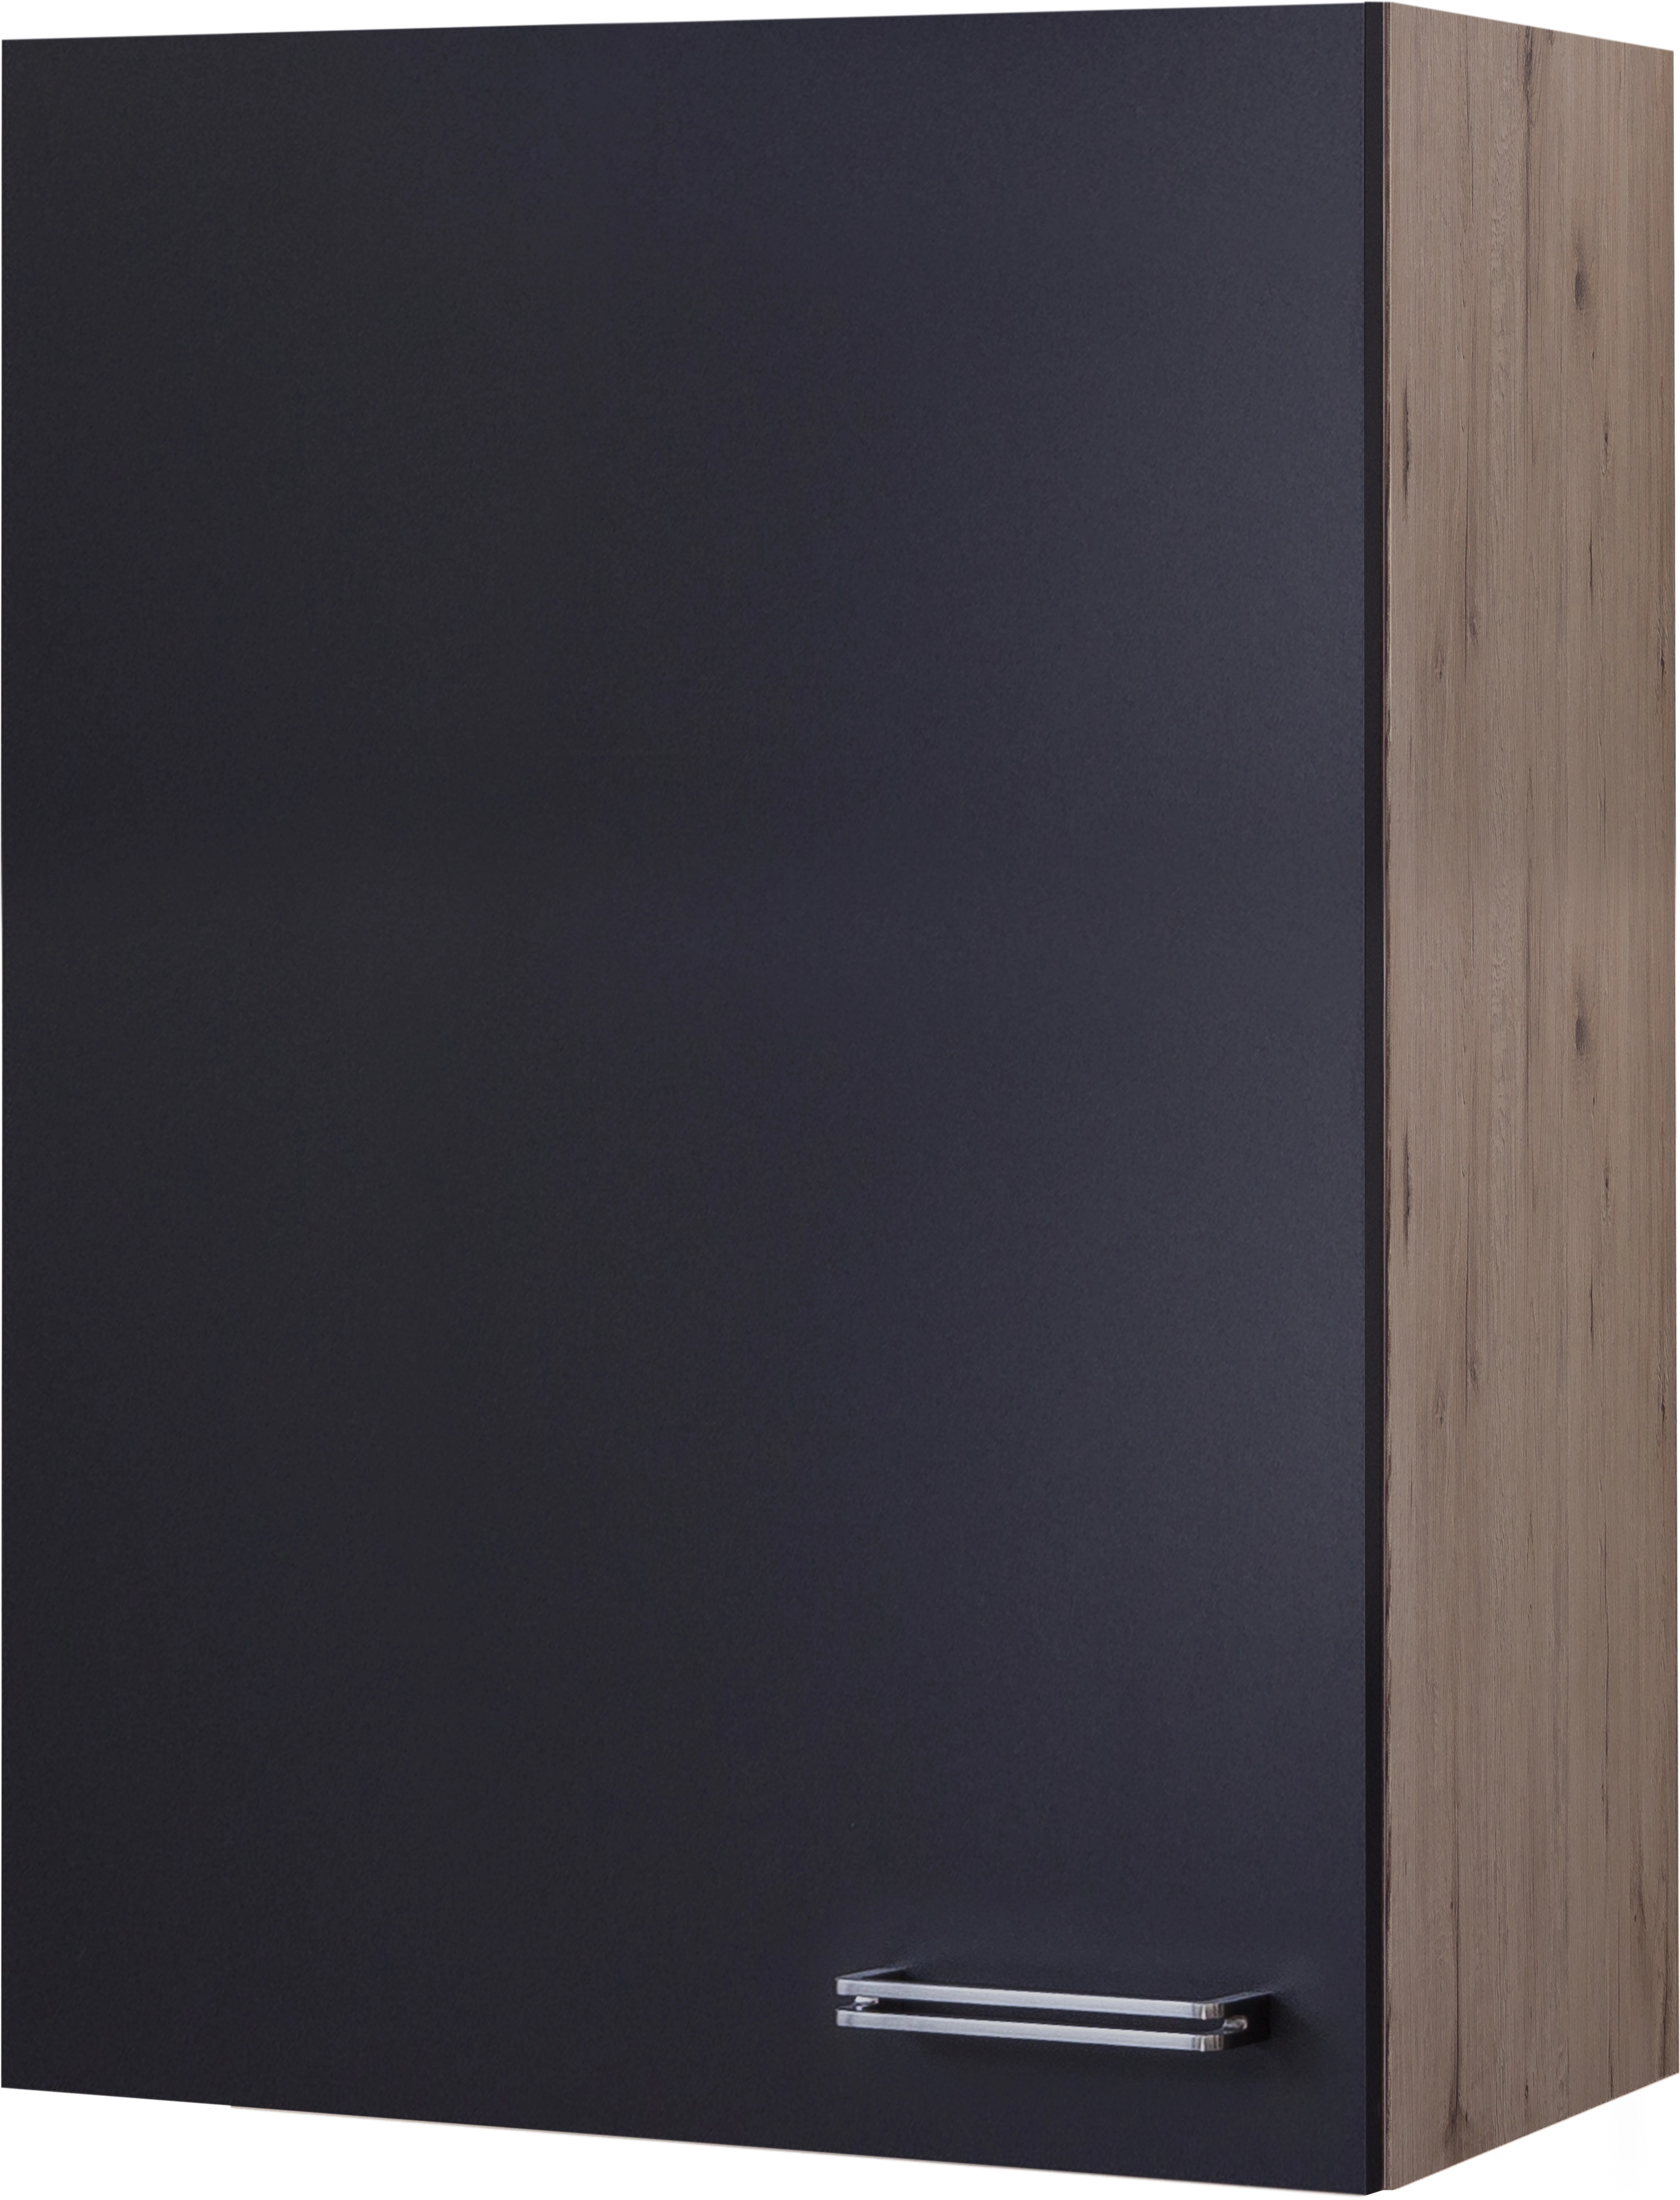 Flex-Well Exclusiv Hängeschrank groß Lara 60 x 89 cm Anthrazit-San Remo  Eiche kaufen bei OBI